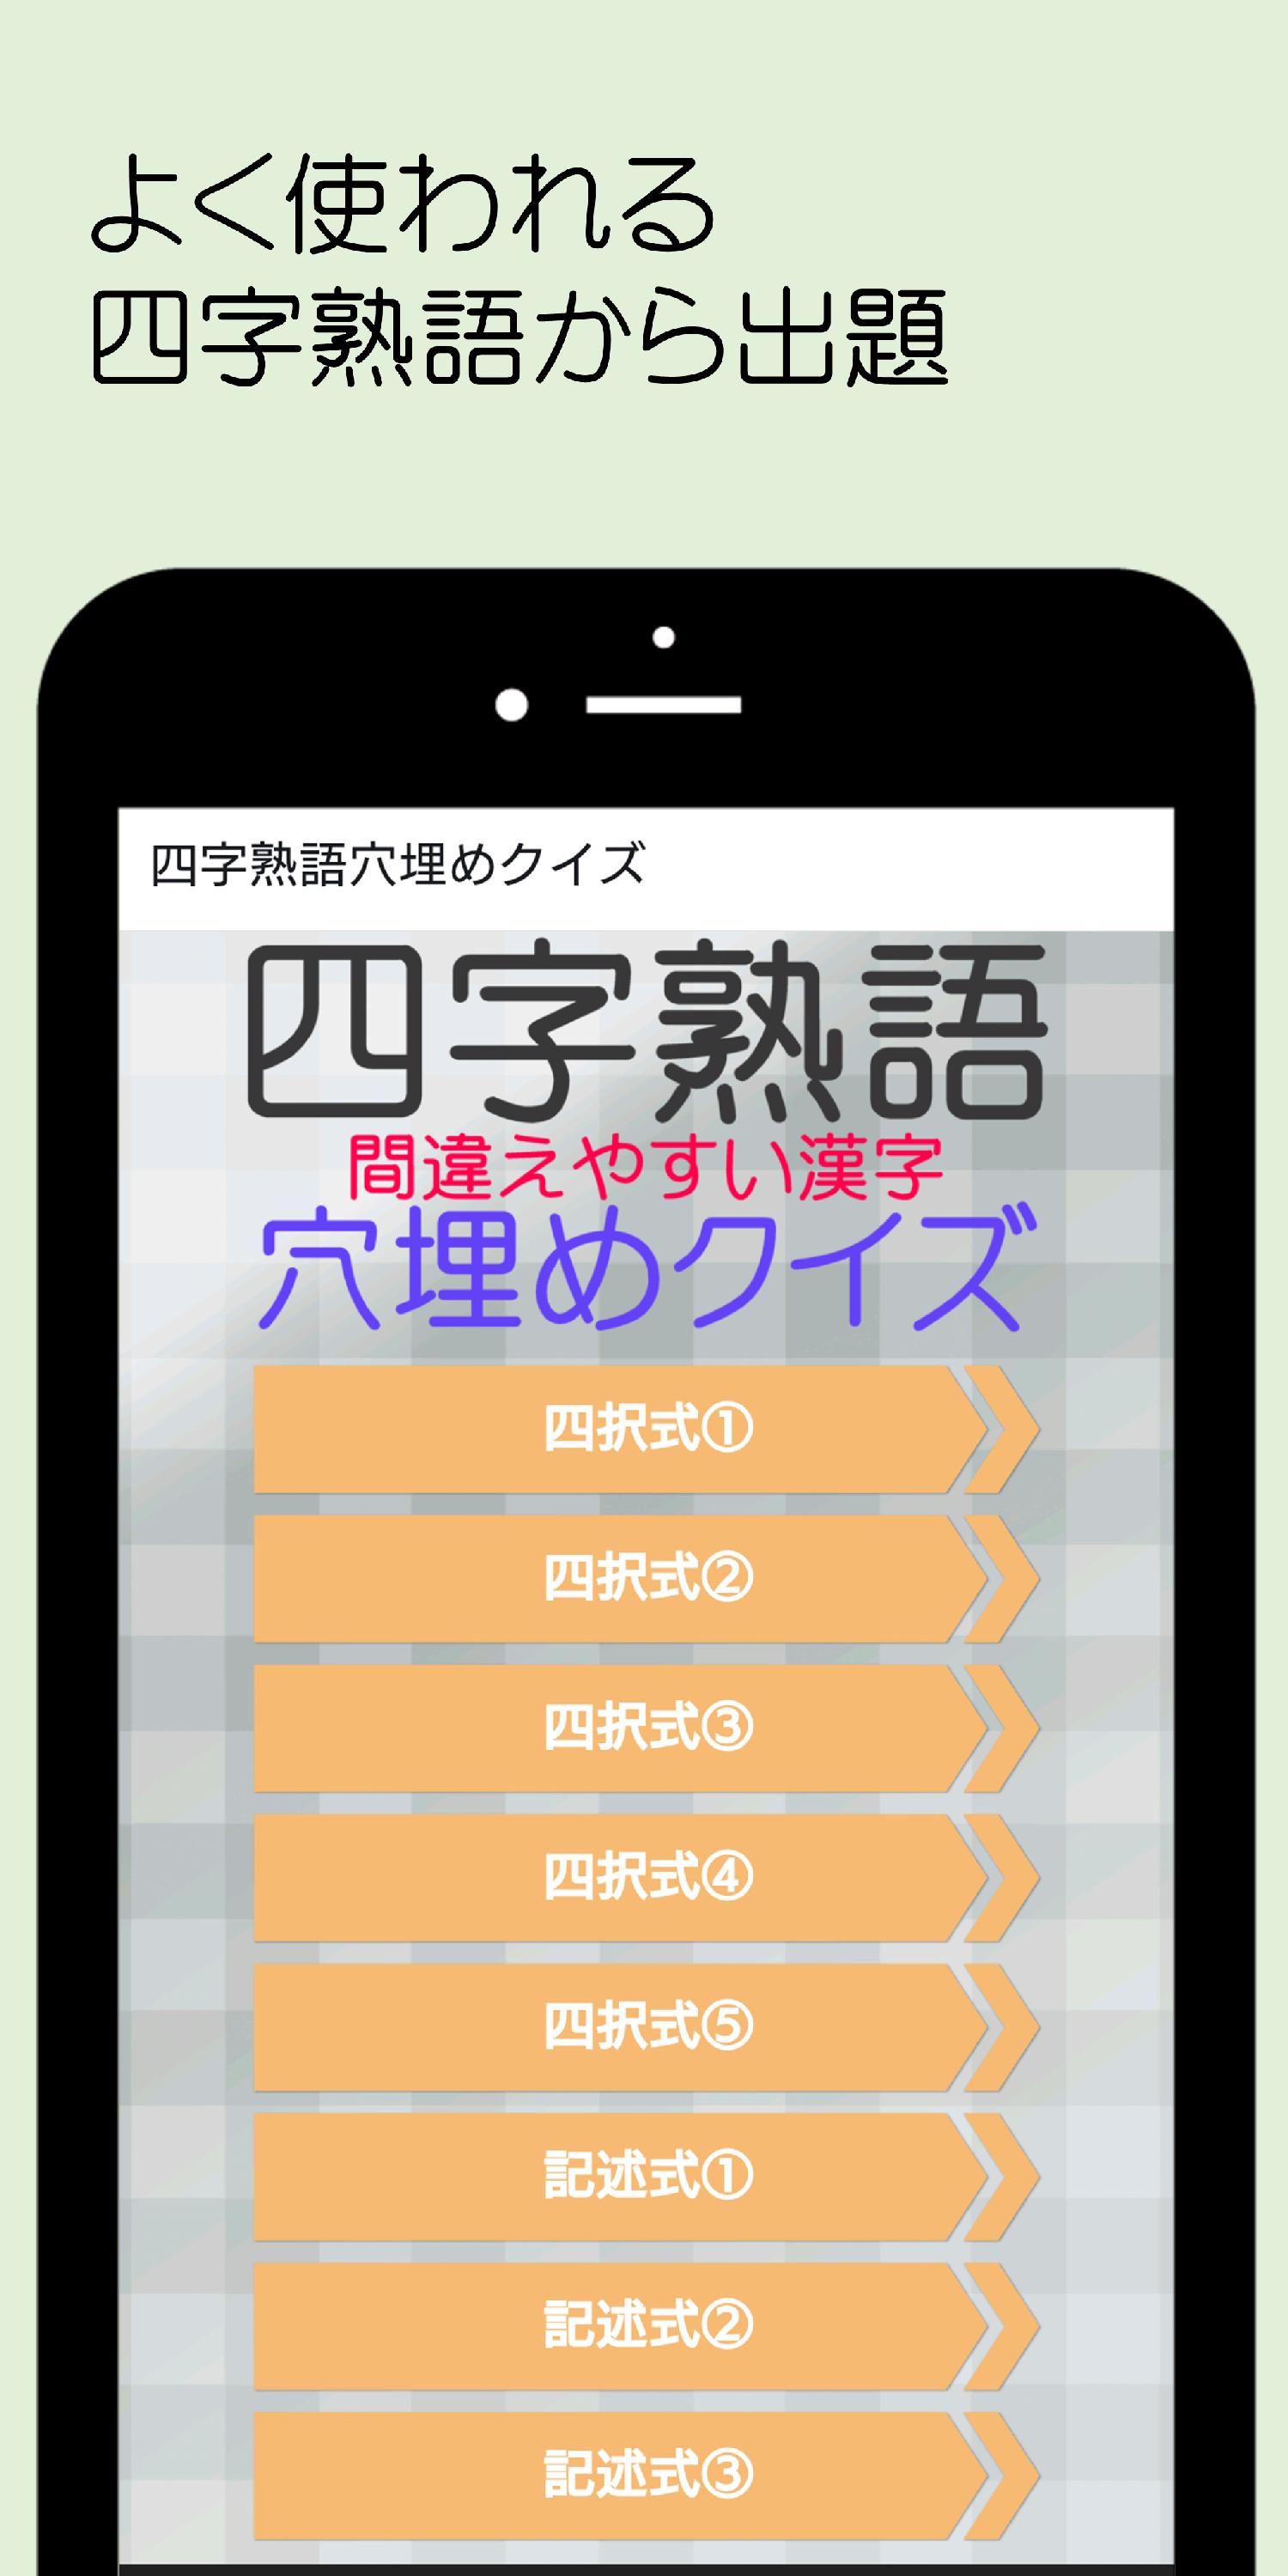 四字熟語 間違えやすい漢字 穴埋めクイズ For Android Apk Download